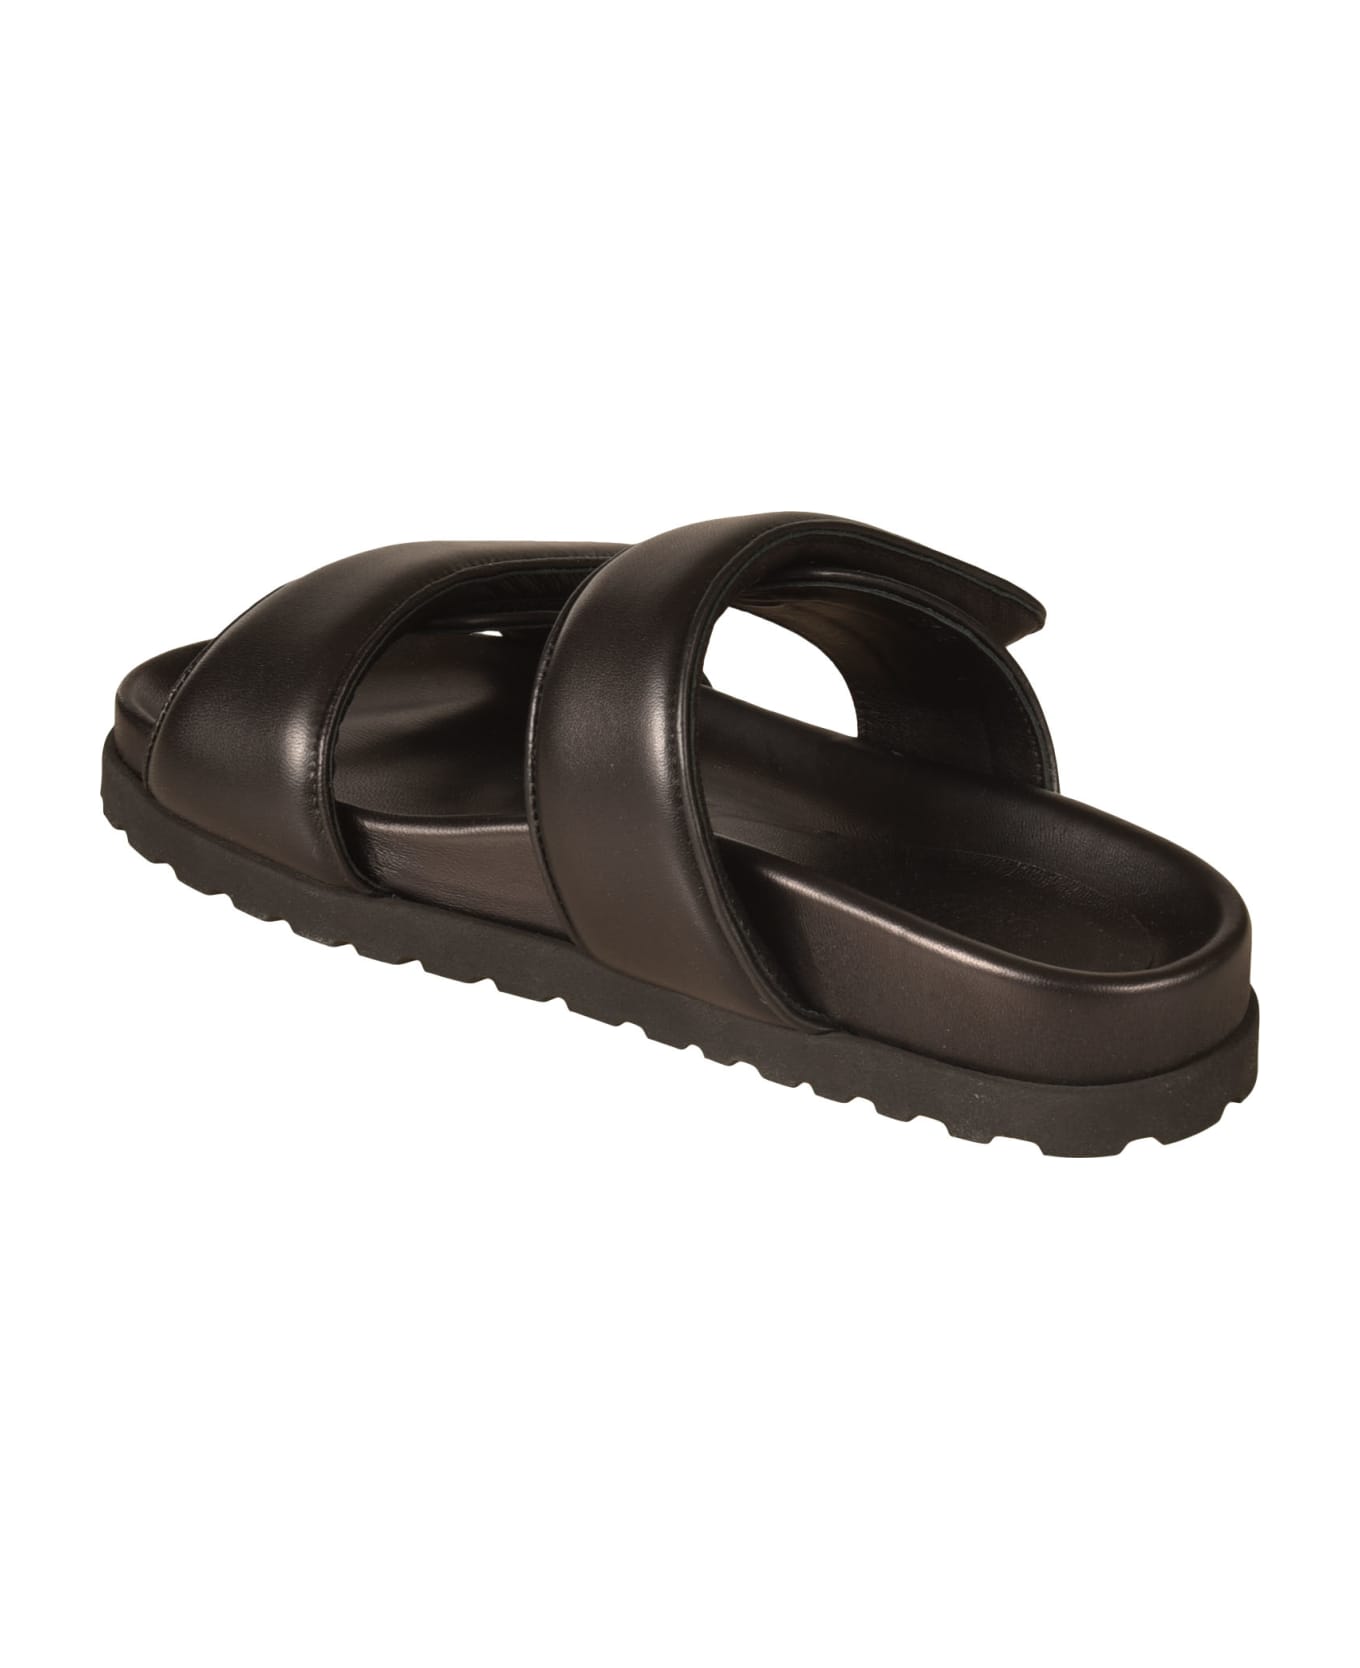 GIA BORGHINI Perni 11 Flat Sandals - Black サンダル